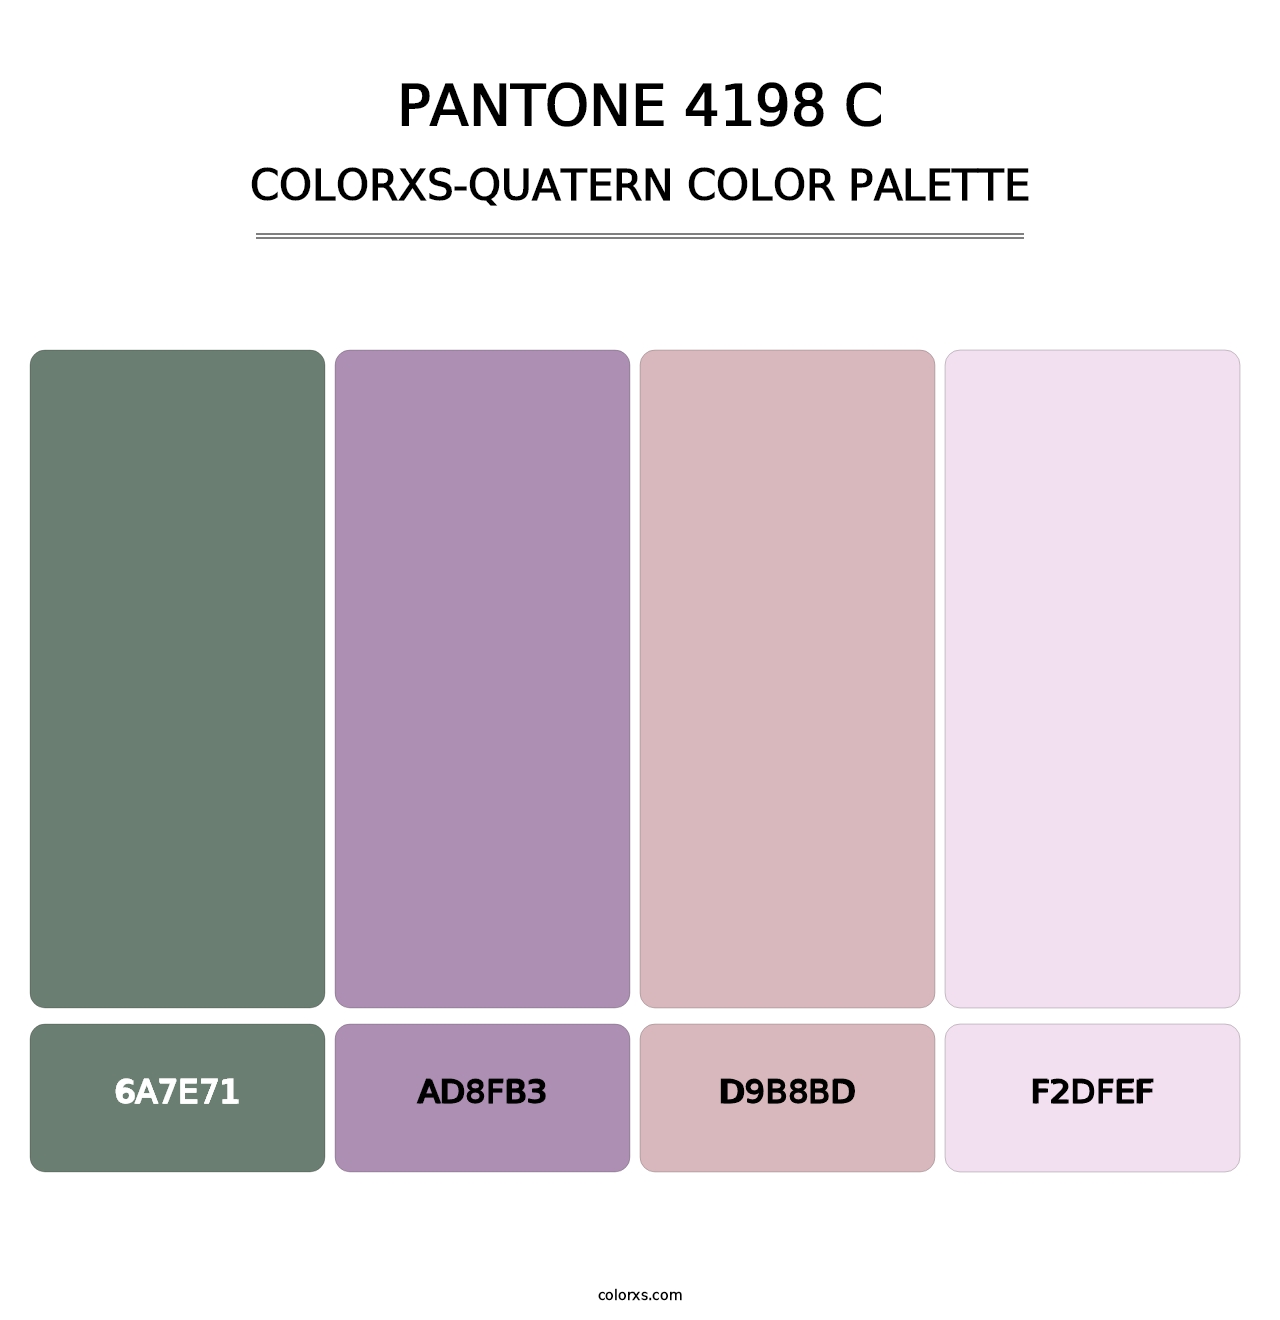 PANTONE 4198 C - Colorxs Quatern Palette